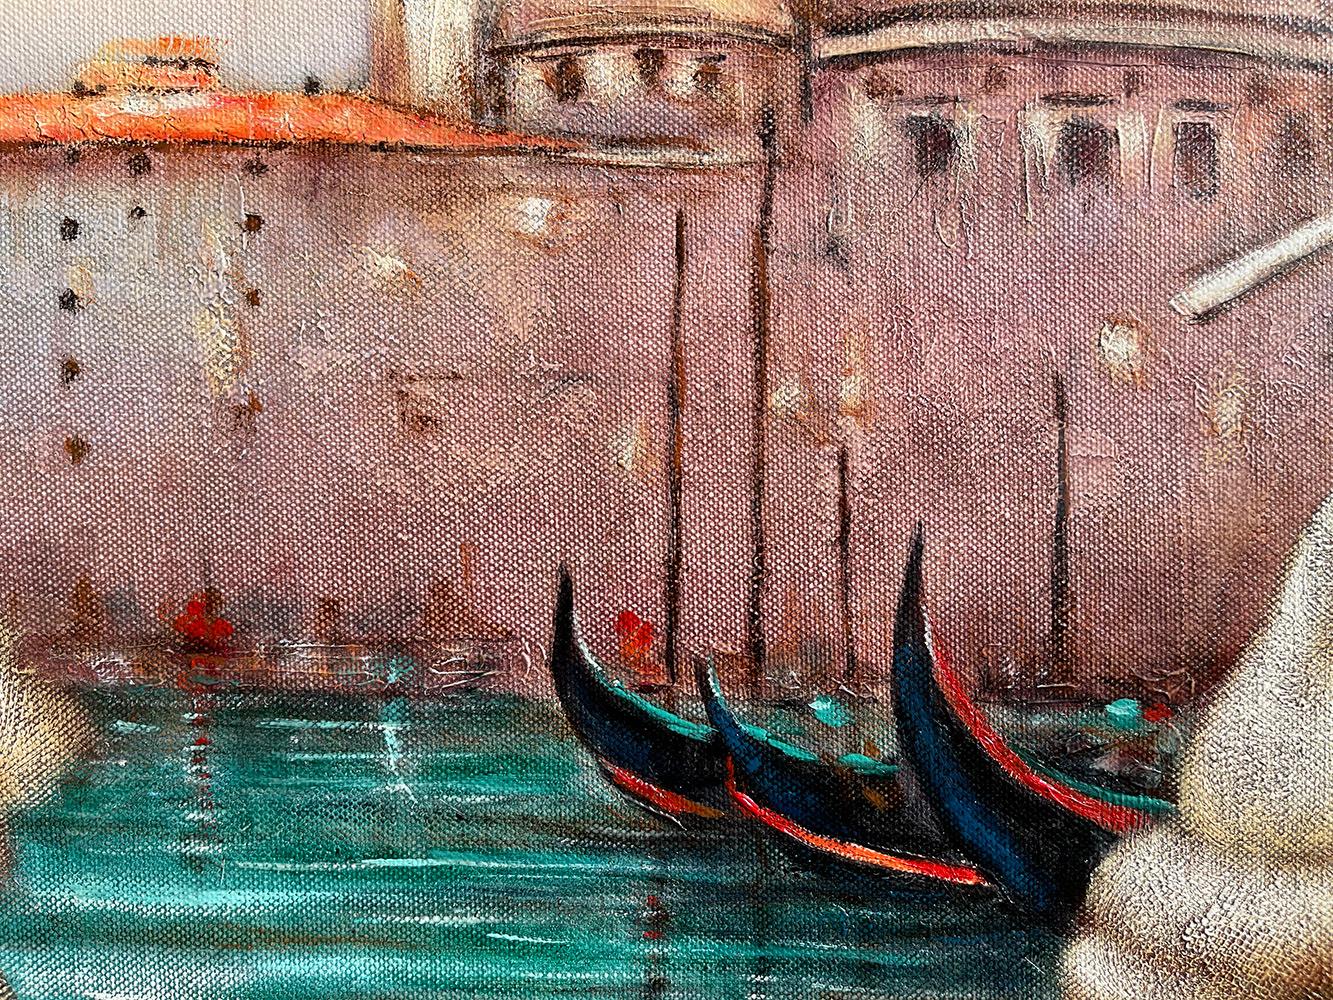 Edgar Barrios ** Venezia Languid ** Original Oil On Canvas 5